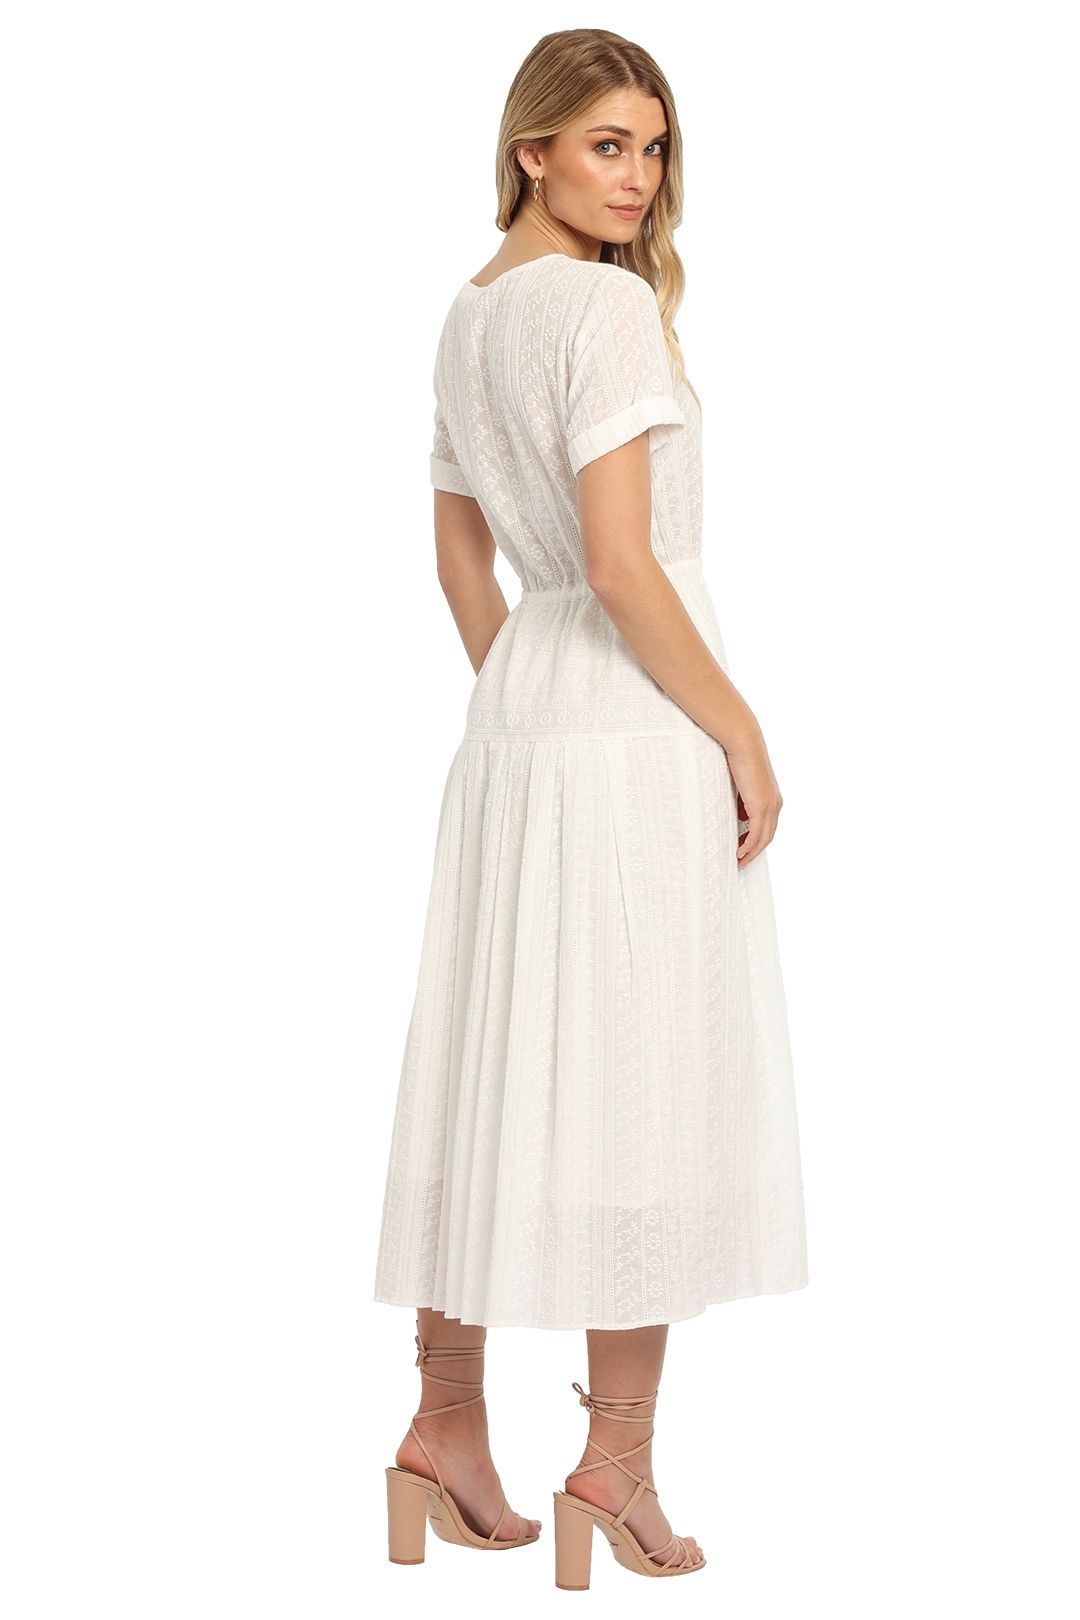 Kate Sylvester Broderie Midi Dress in White Short sleeve